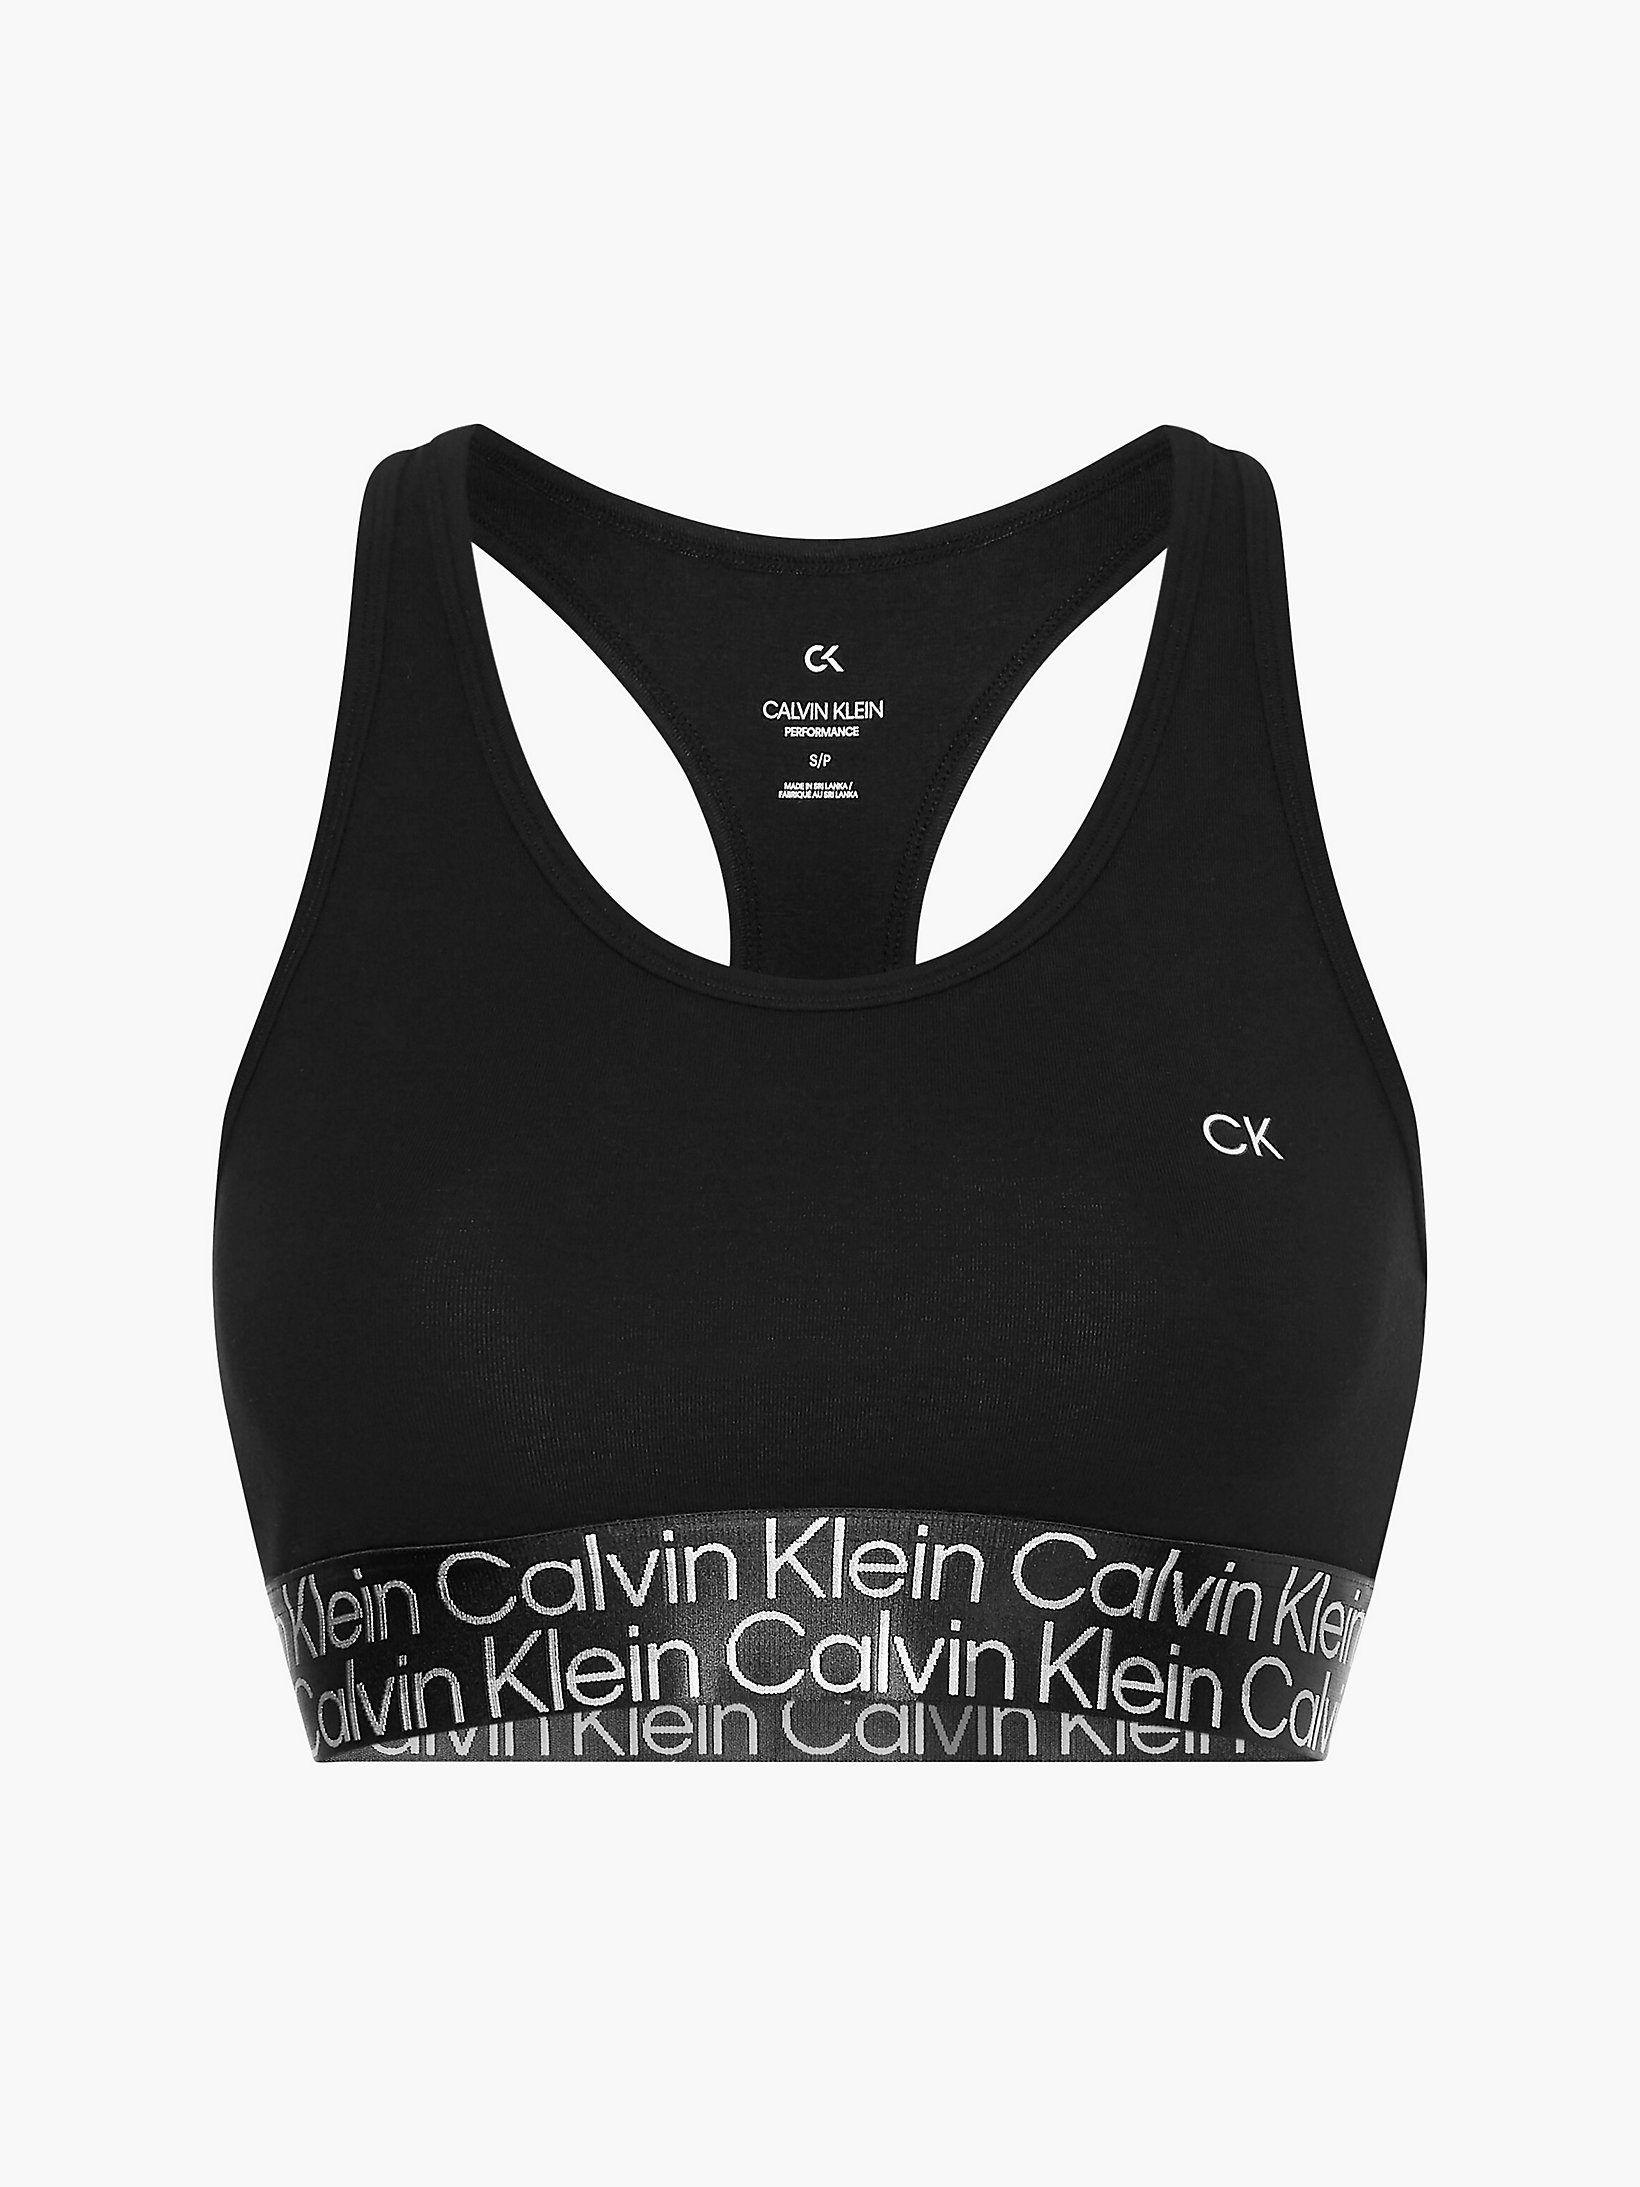 Black Beauty Low Impact Sports Bra undefined women Calvin Klein